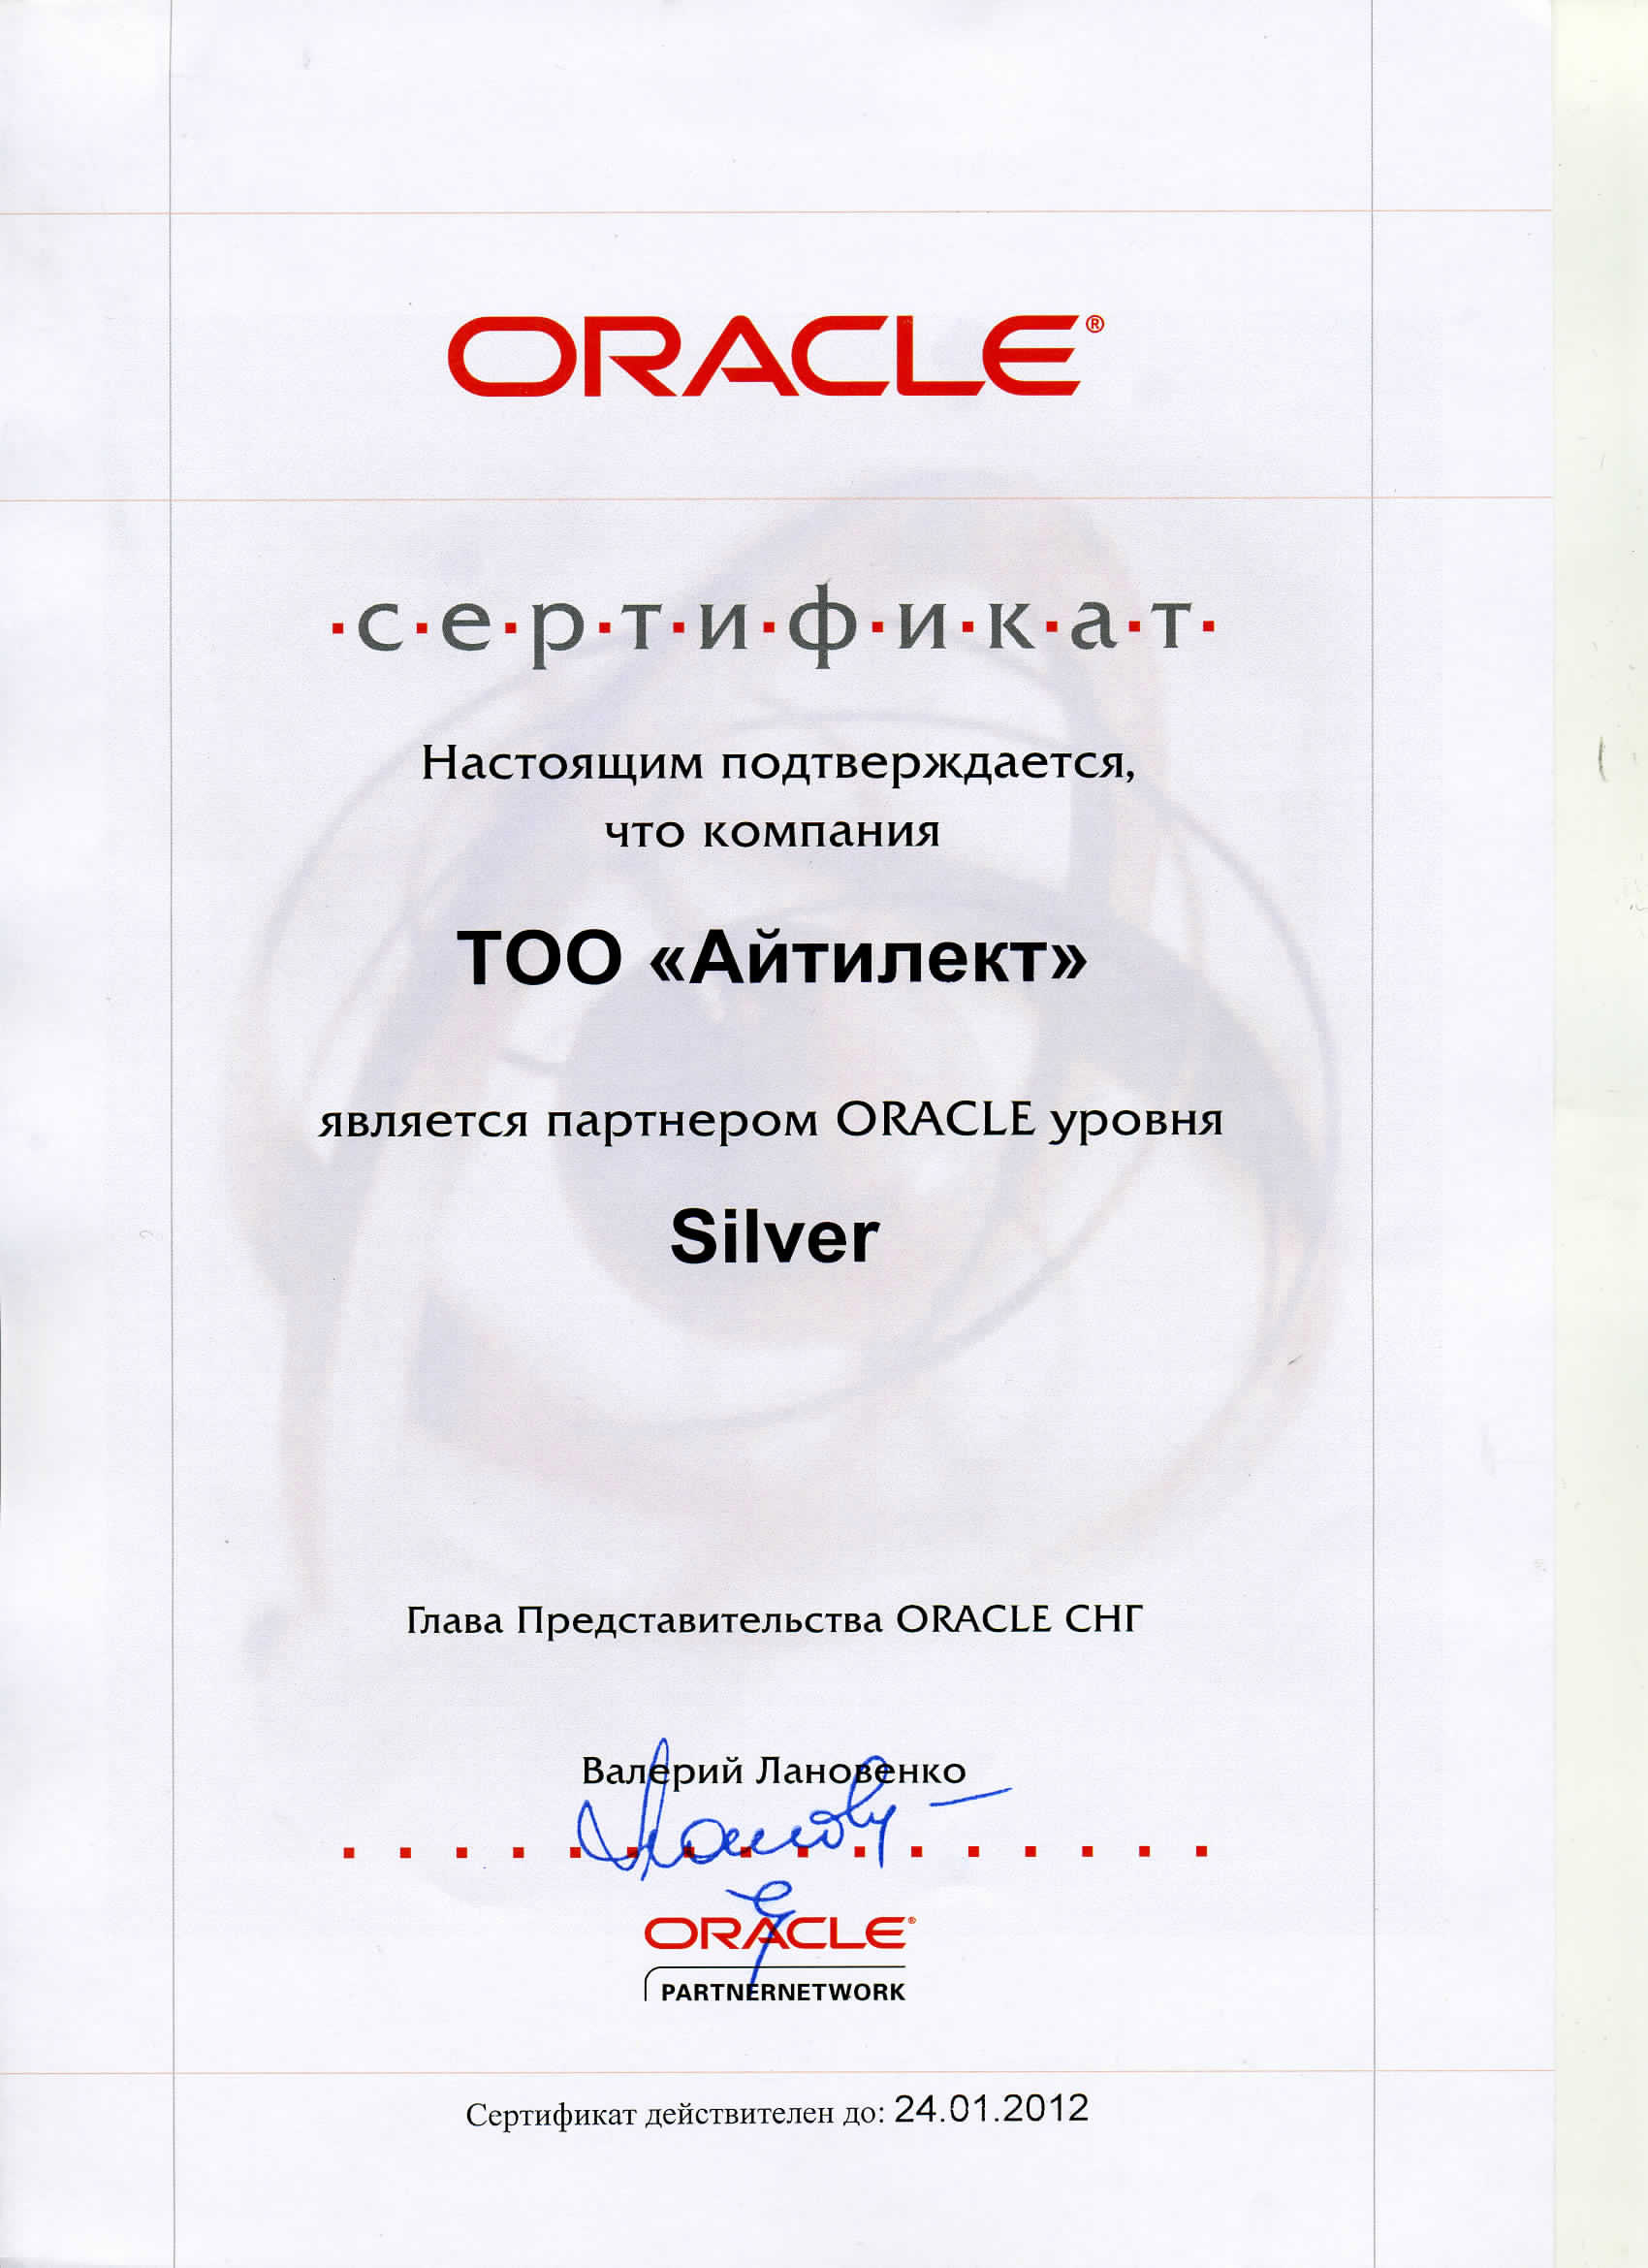 Айтилект - Авторизованный партнер Oracle уровня SILVER!